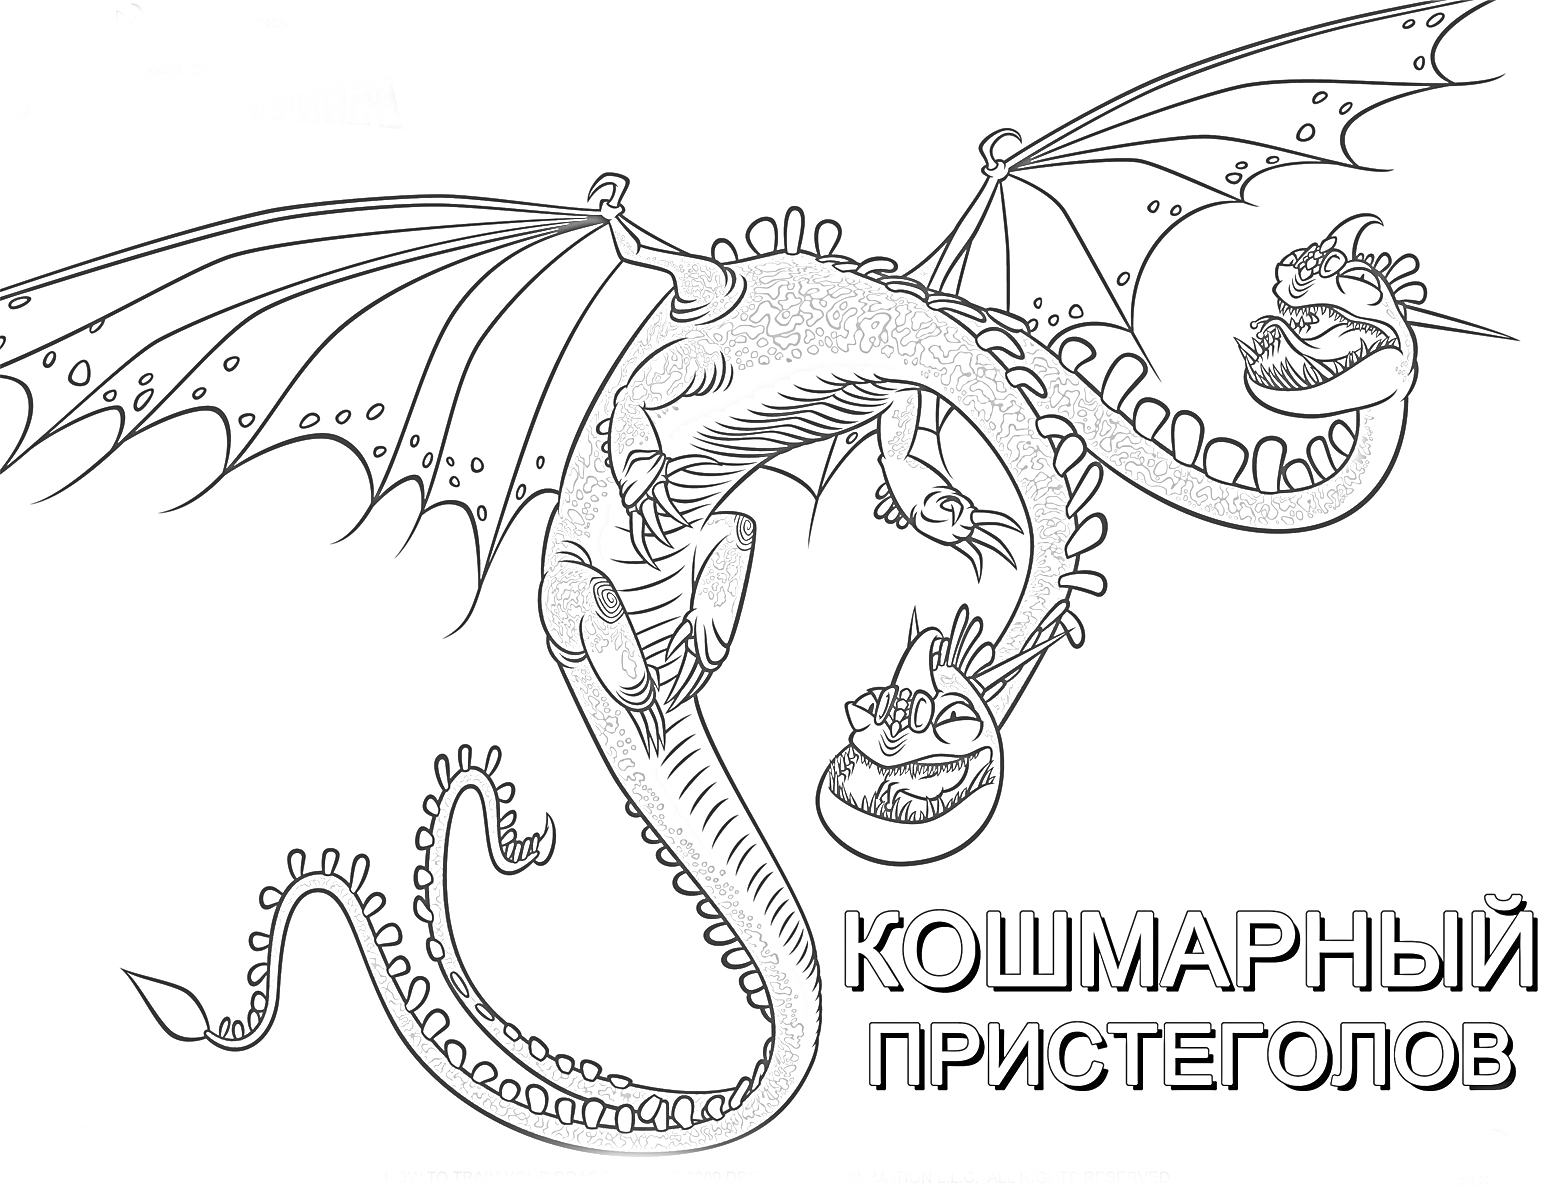 Кошмарный Пристеголов, дракон с двумя головами, раскрытые крылья, вращение в воздухе